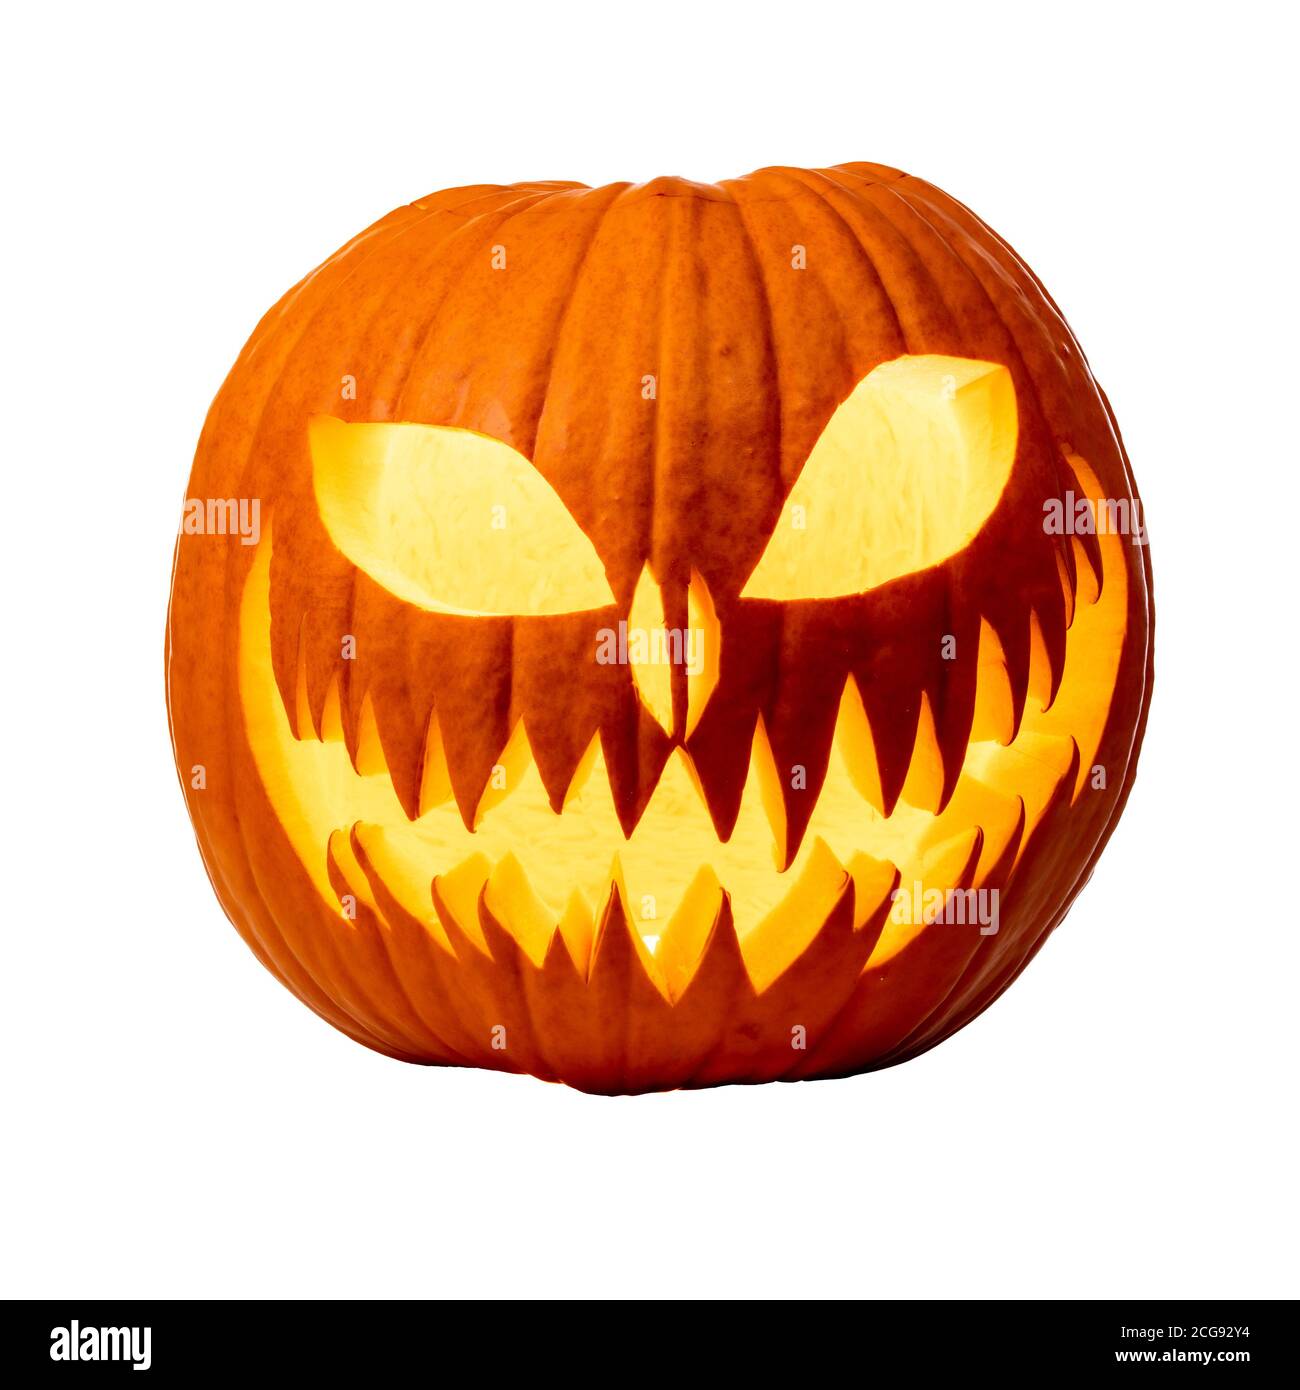 Citrouille d'Halloween sculptée avec visage effrayant et bougie à l'intérieur. Isolée sur blanc. Banque D'Images